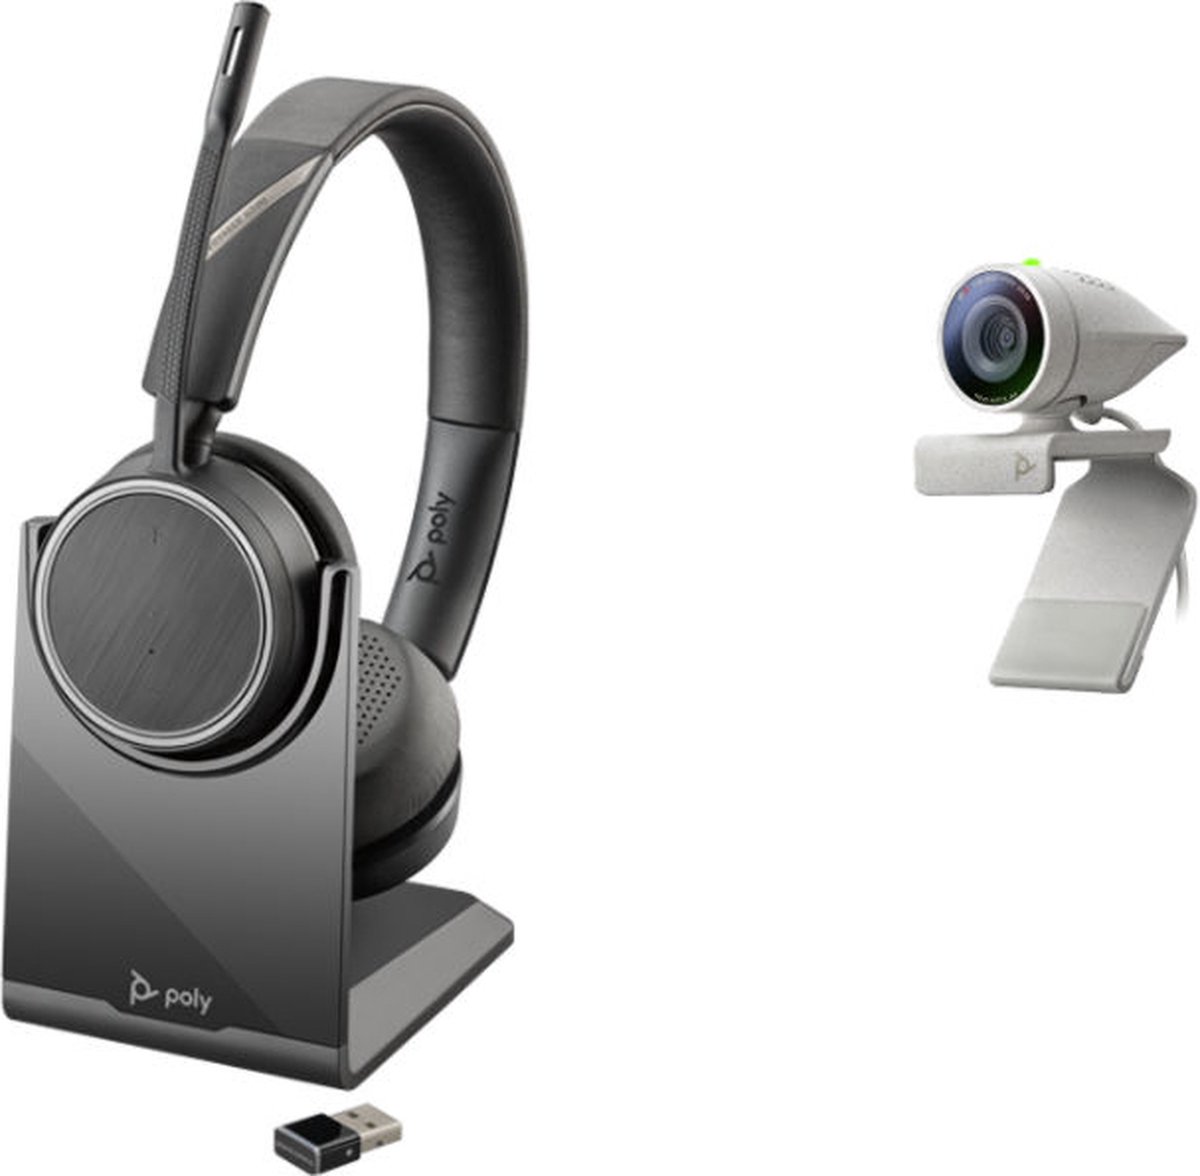 Poly Studio P5-kit met Voyager 4220 UC (Plantronics) – HD-videoconferentiecamera met 1080p – professionele webcam en draadloze stereo headsetkit